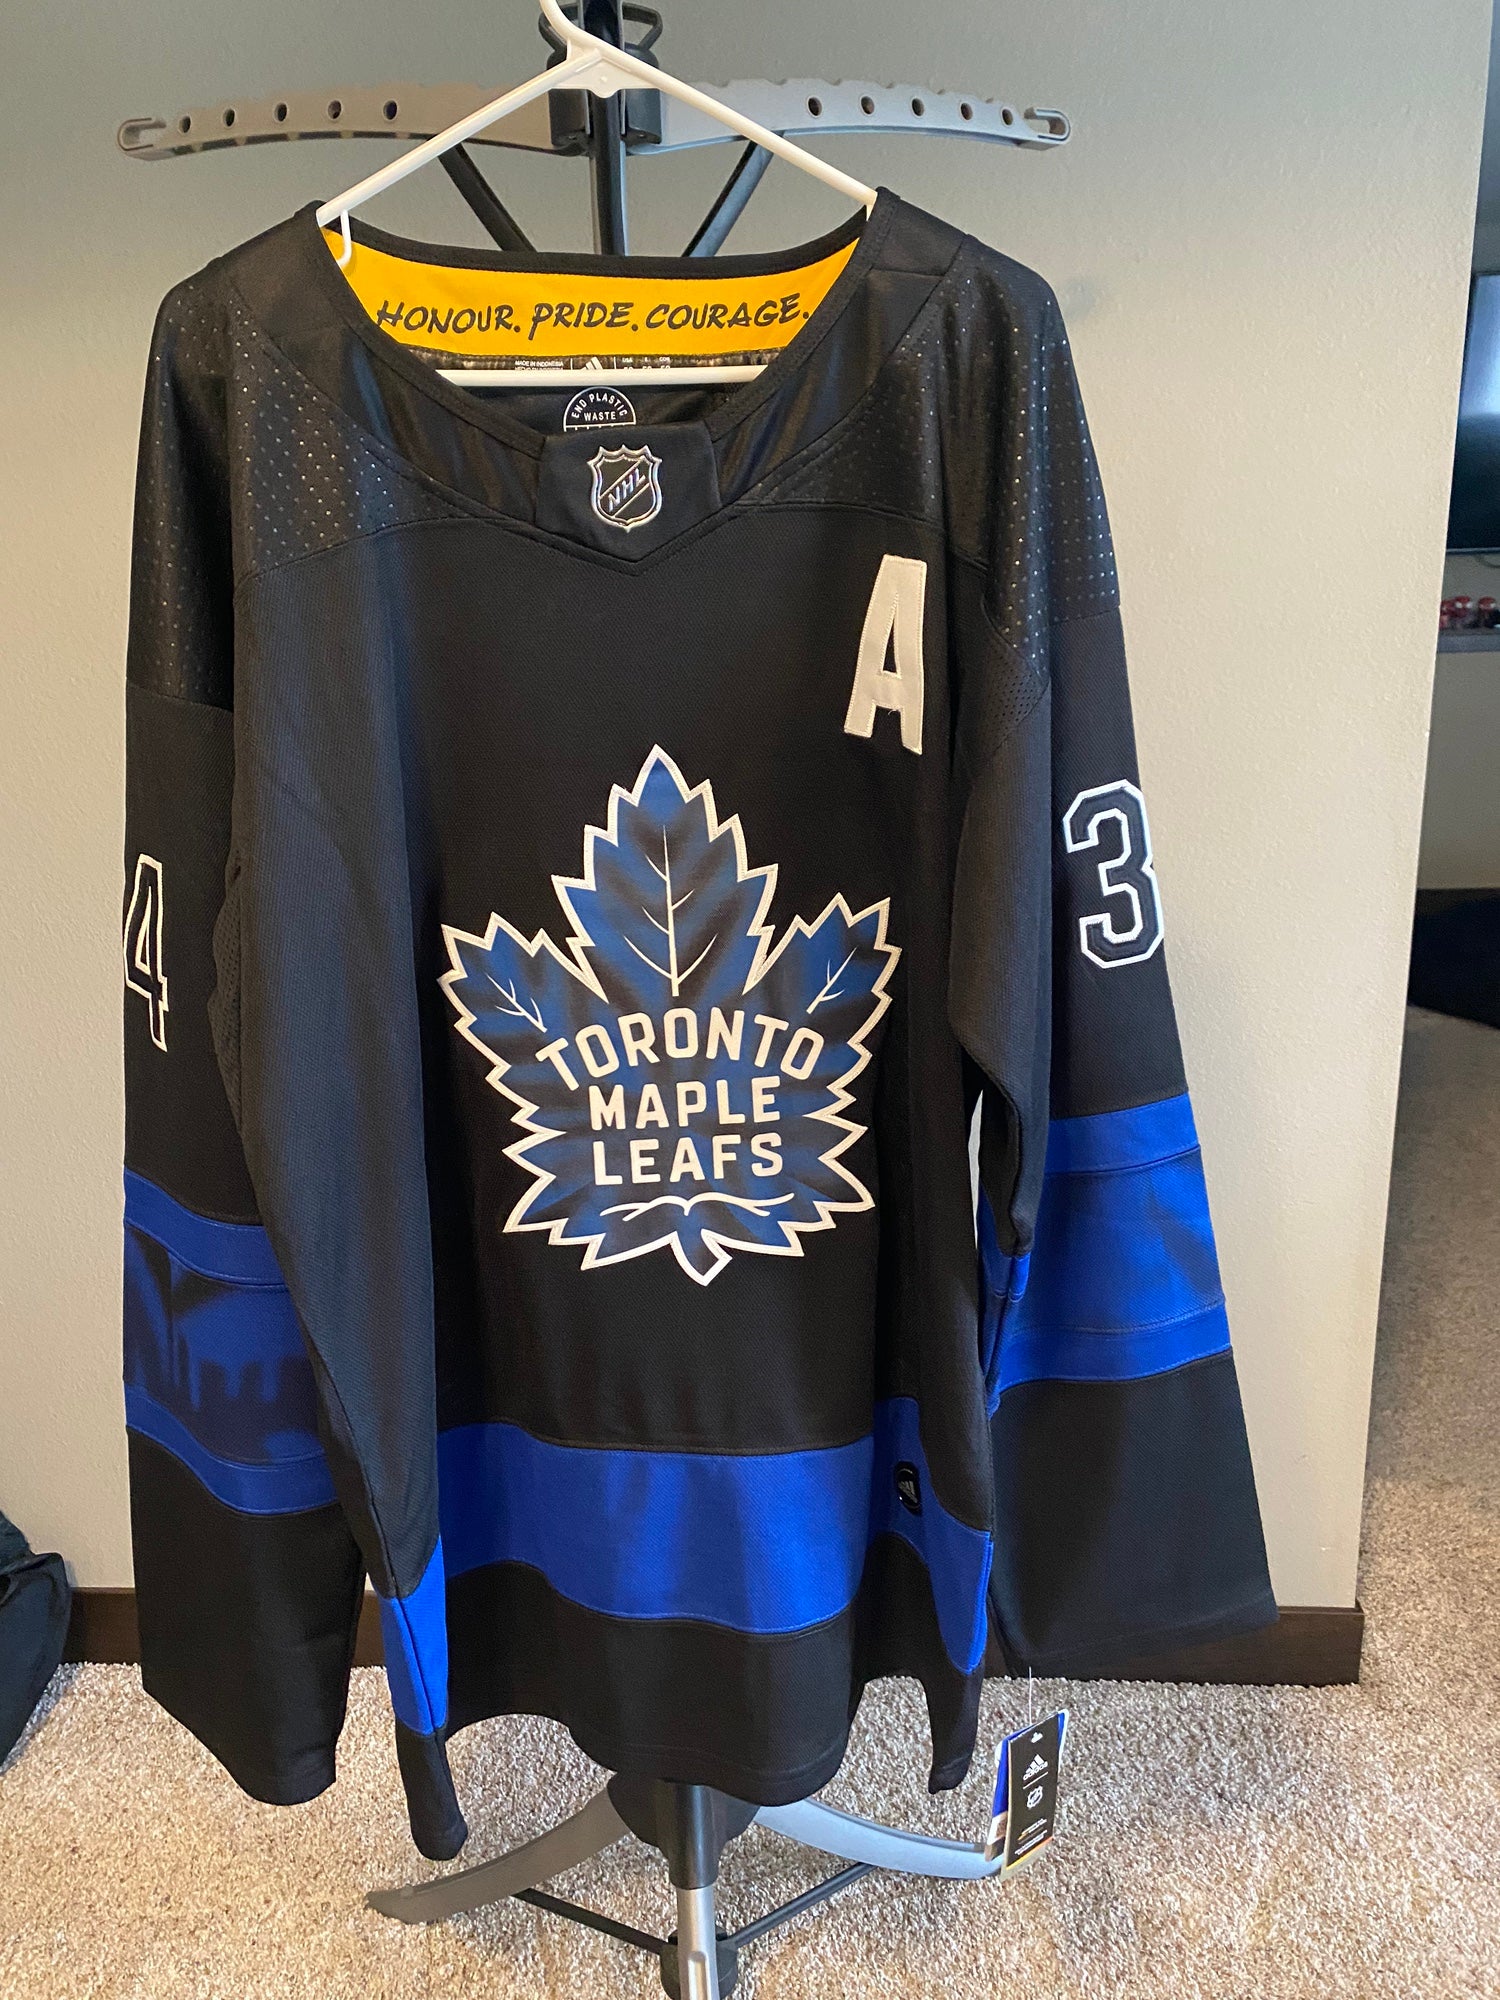 Edge Toronto Maple Leafs Autographed adidas Black Alternate